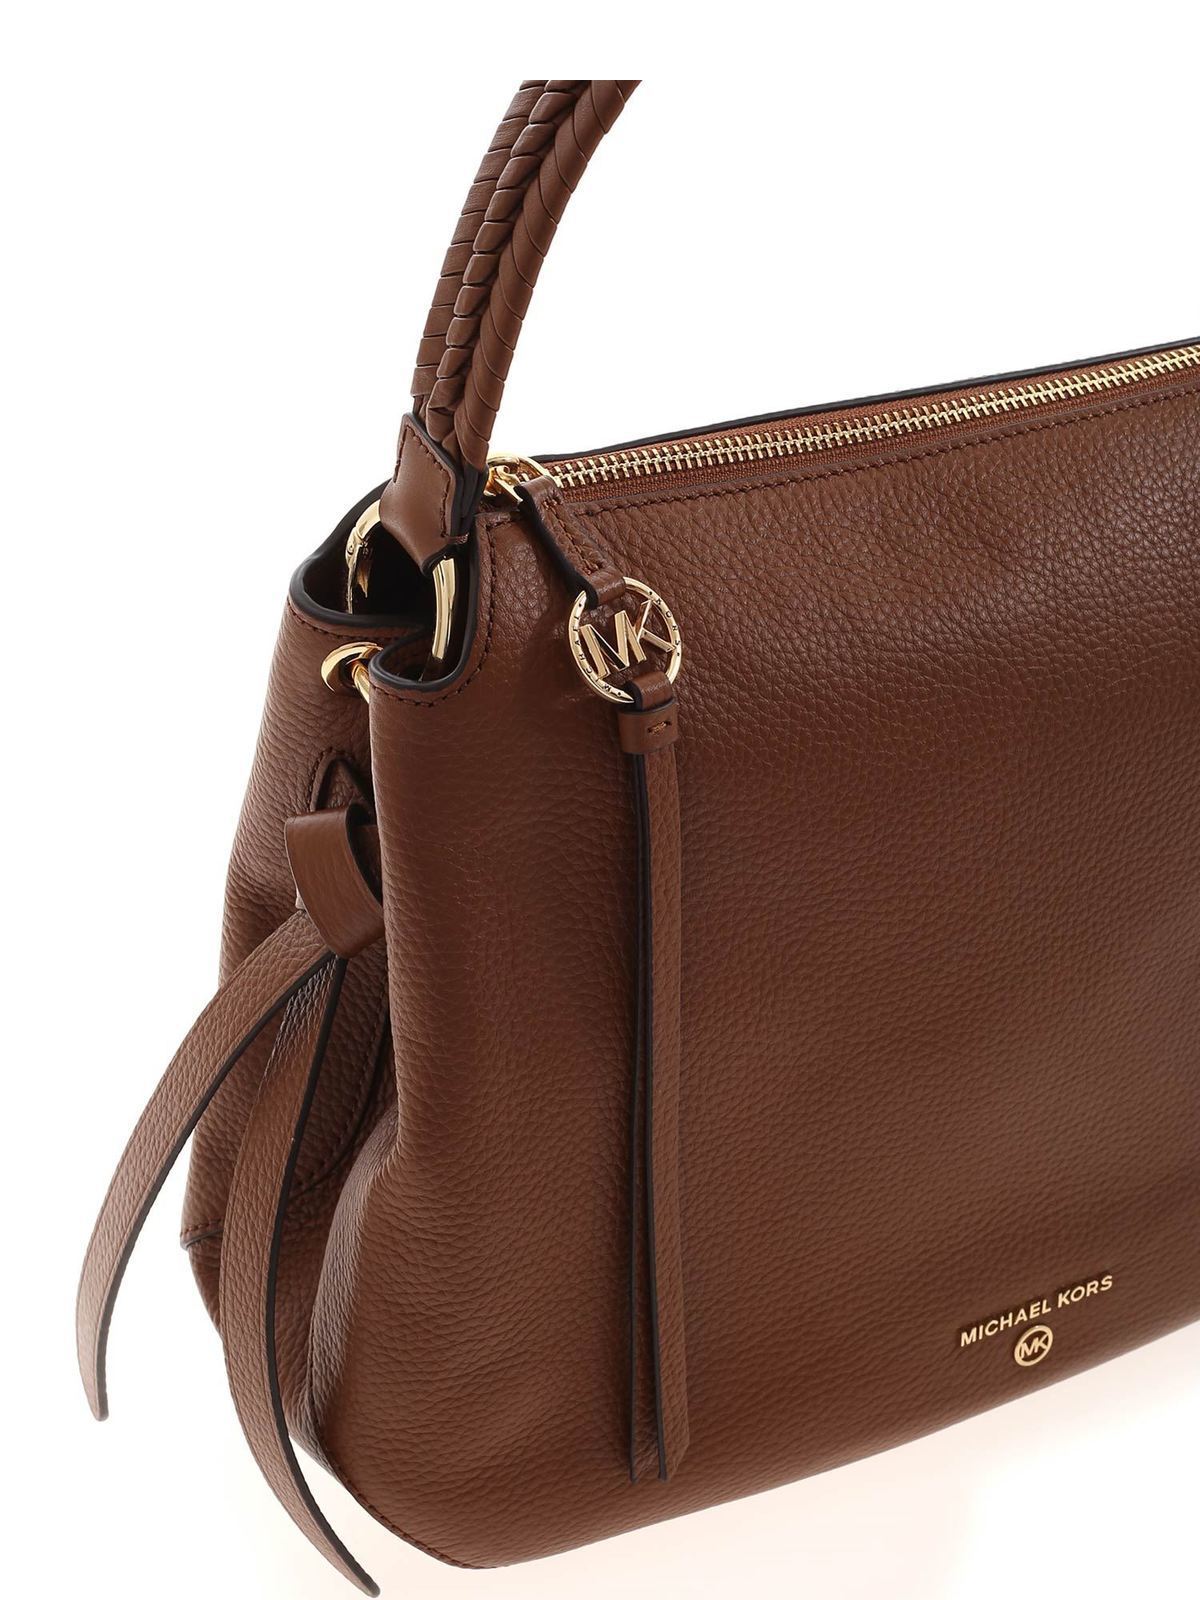 Shoulder bags Michael Kors - Grand large bag in brown - 30S1GG6H3L230